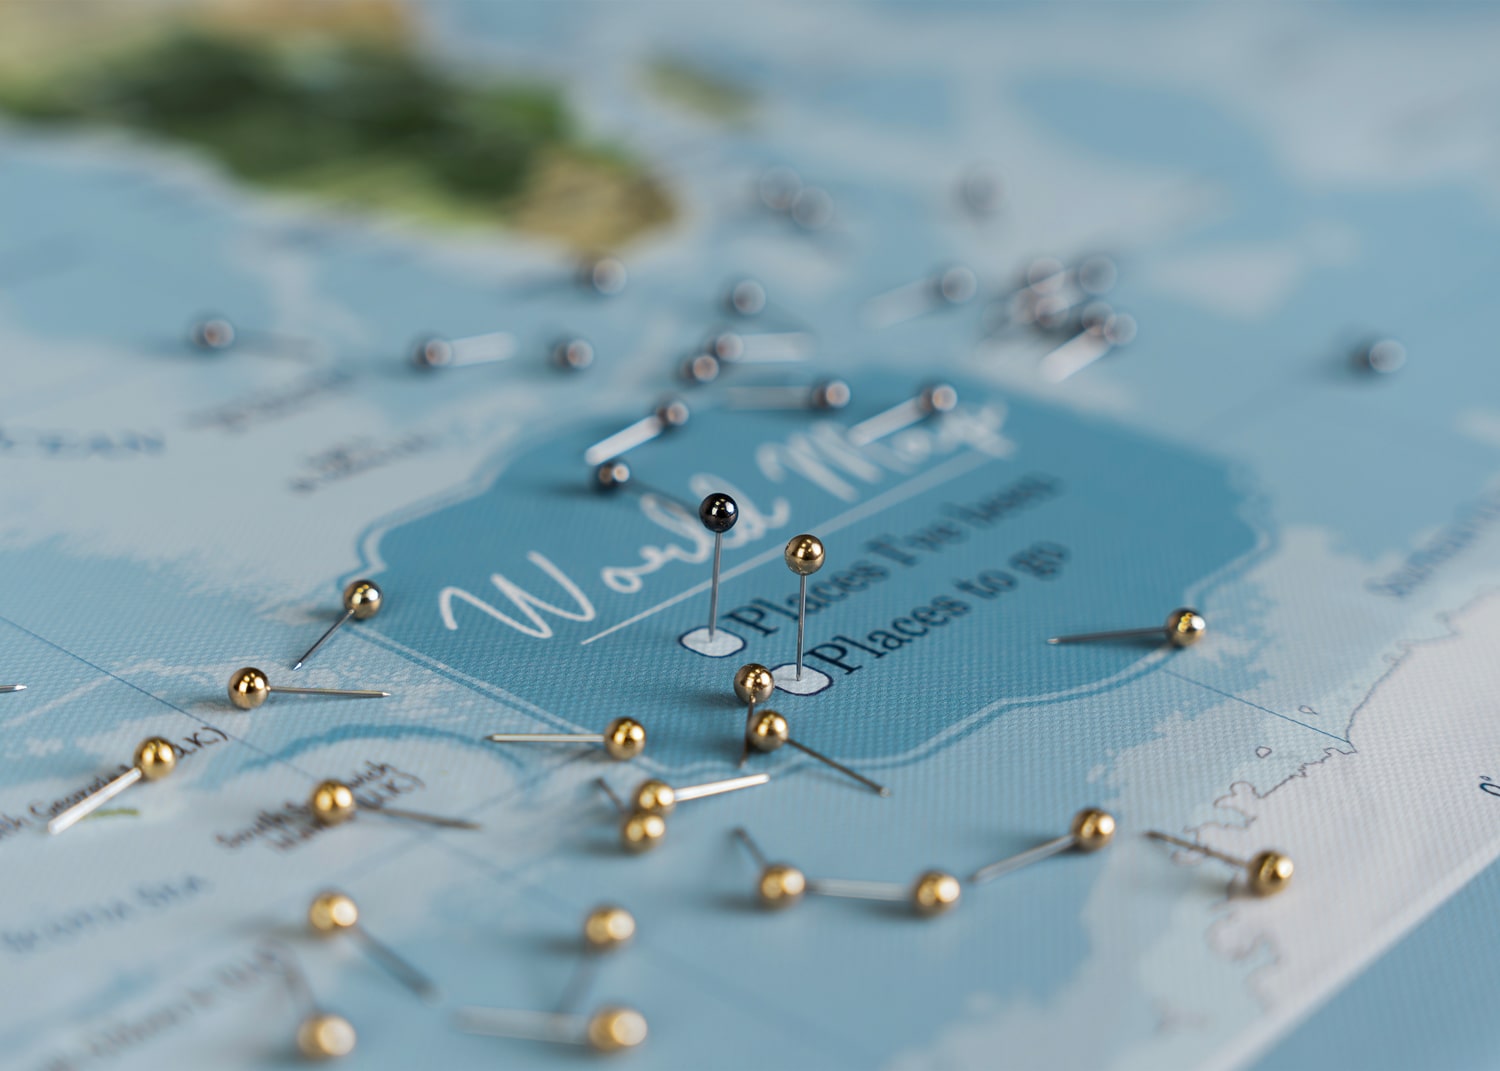 Detailaufnahme einer hellblauen Weltkarte Pinnwand mit goldfarbenen und schwarzen Pins zum Markieren von Reisezielen, eine inspirierende Geschenkidee, um Reiseerlebnisse festzuhalten und zukünftige Reisen zu planen.